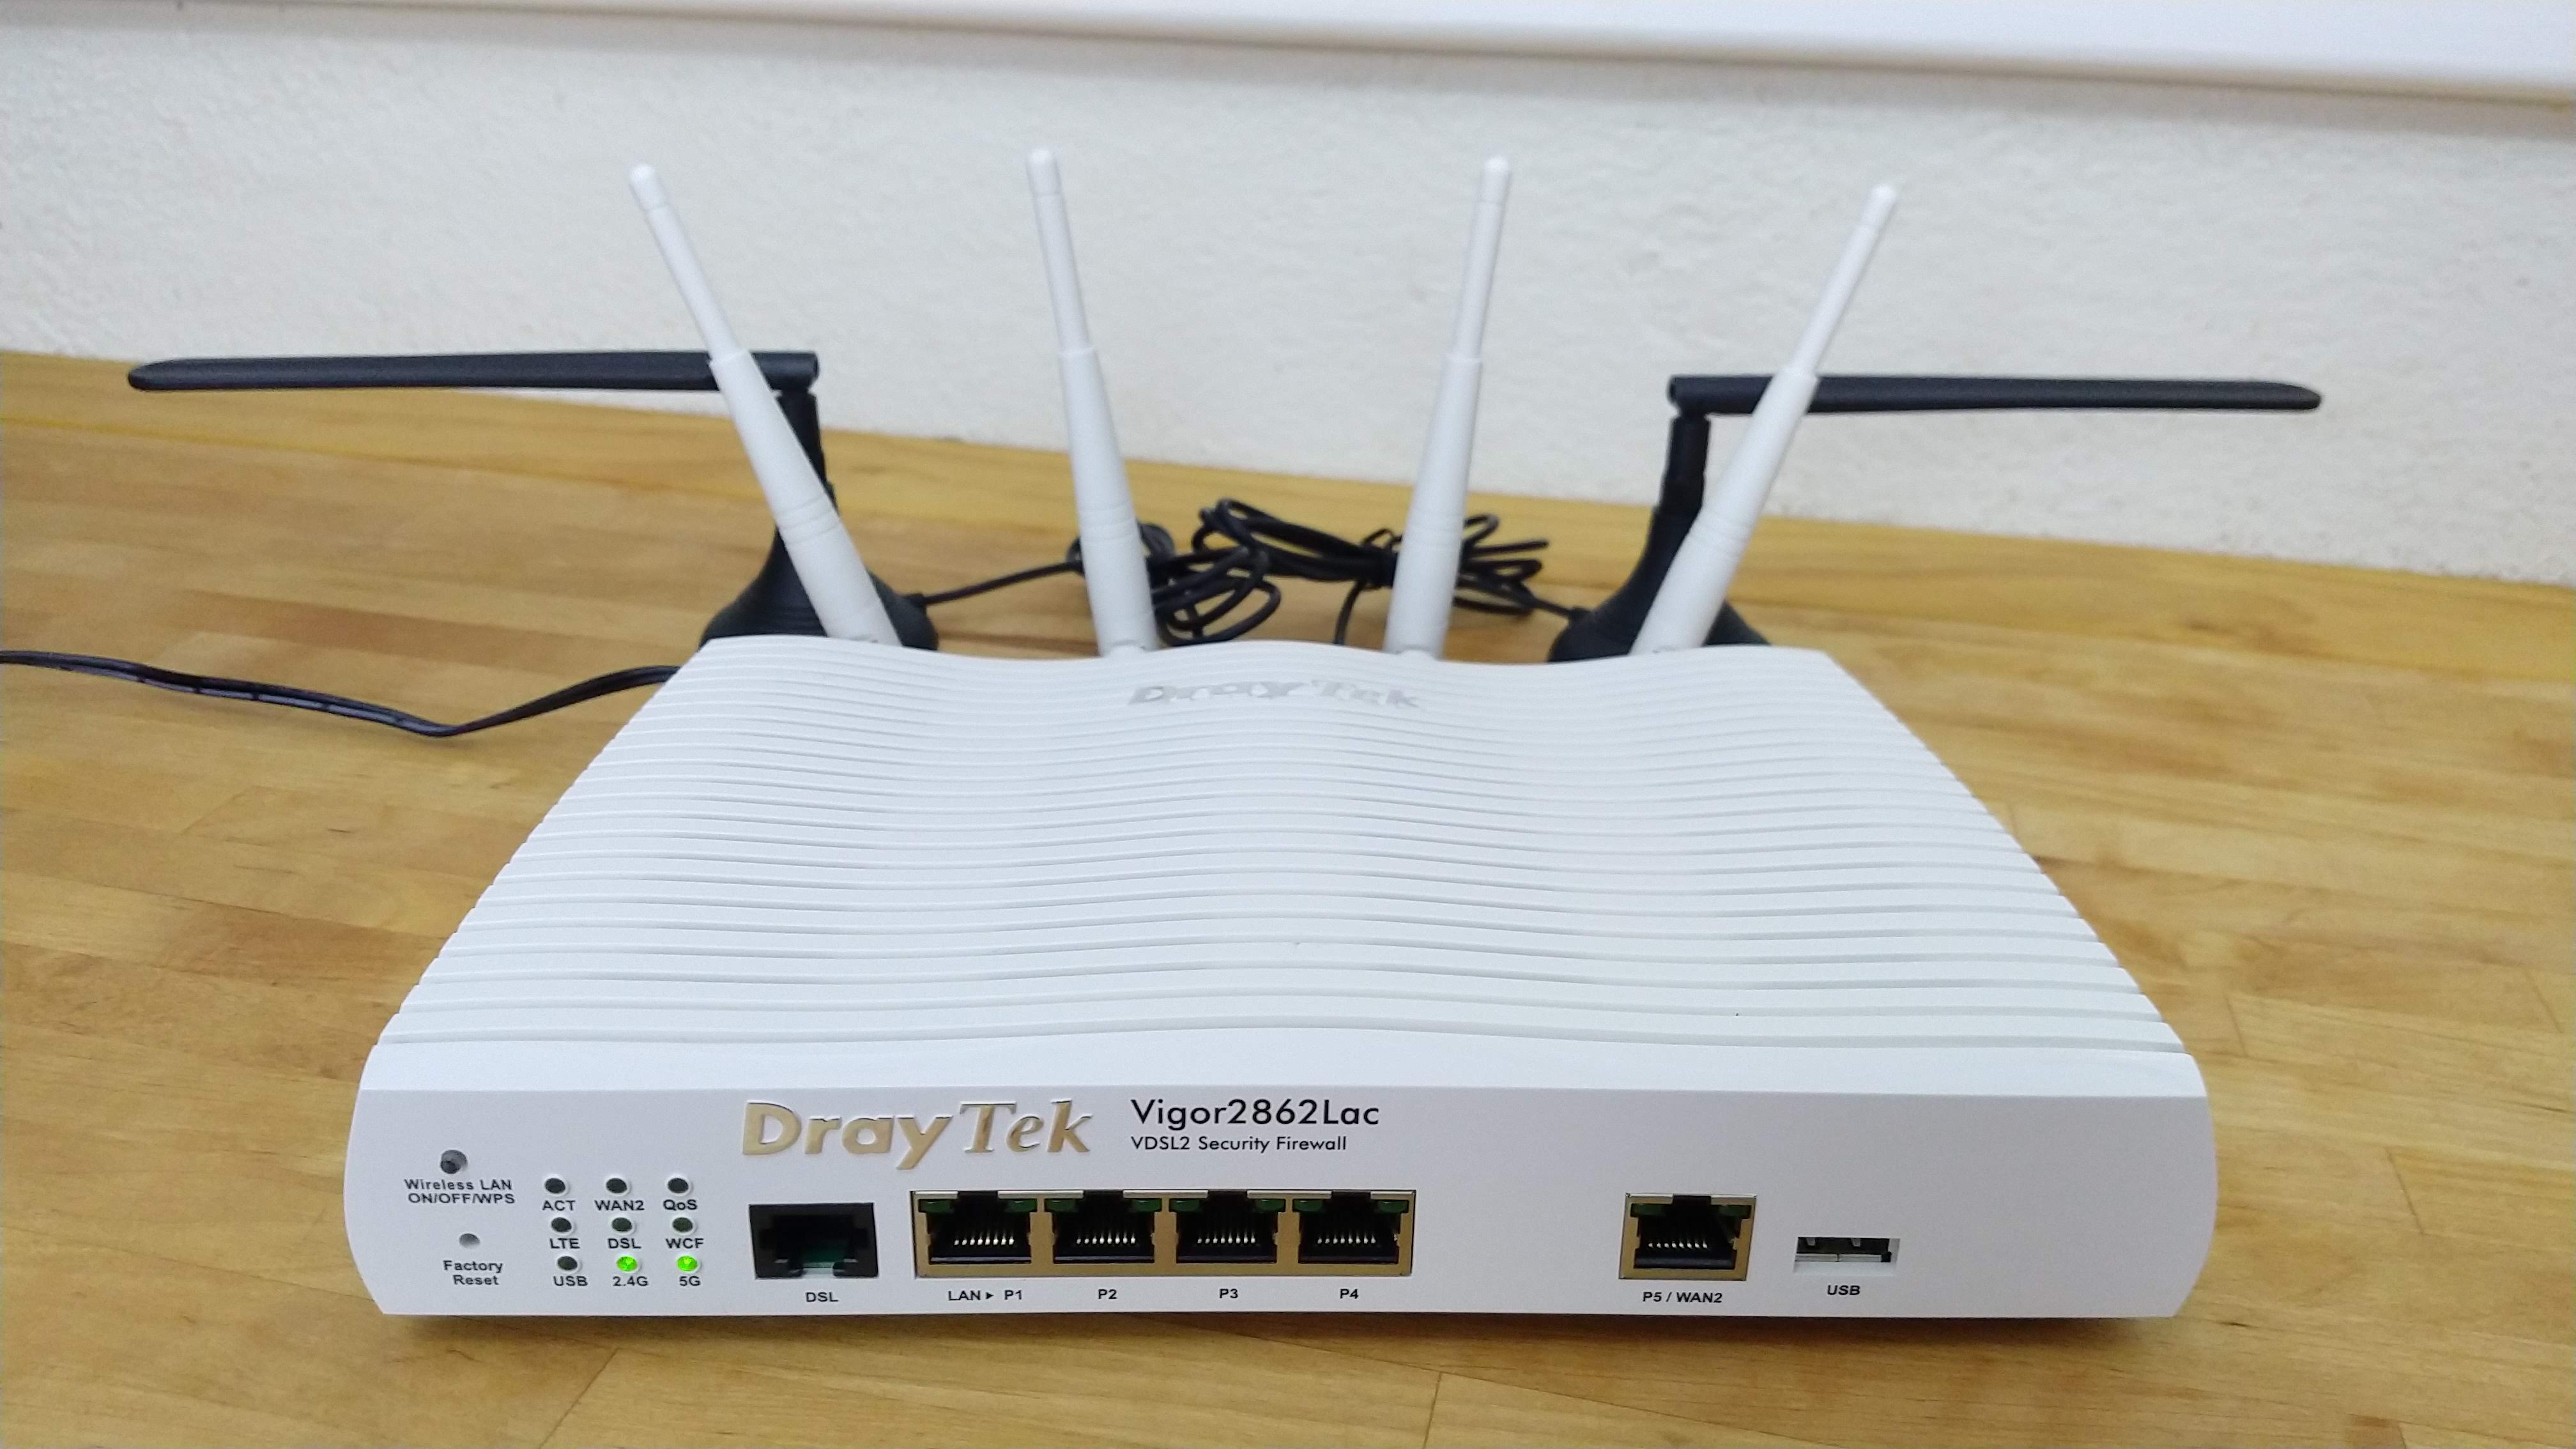 Used DrayTek Draytek Vigor 2860 VDSL2 Security Firewall No Wireless Router Gigabit 